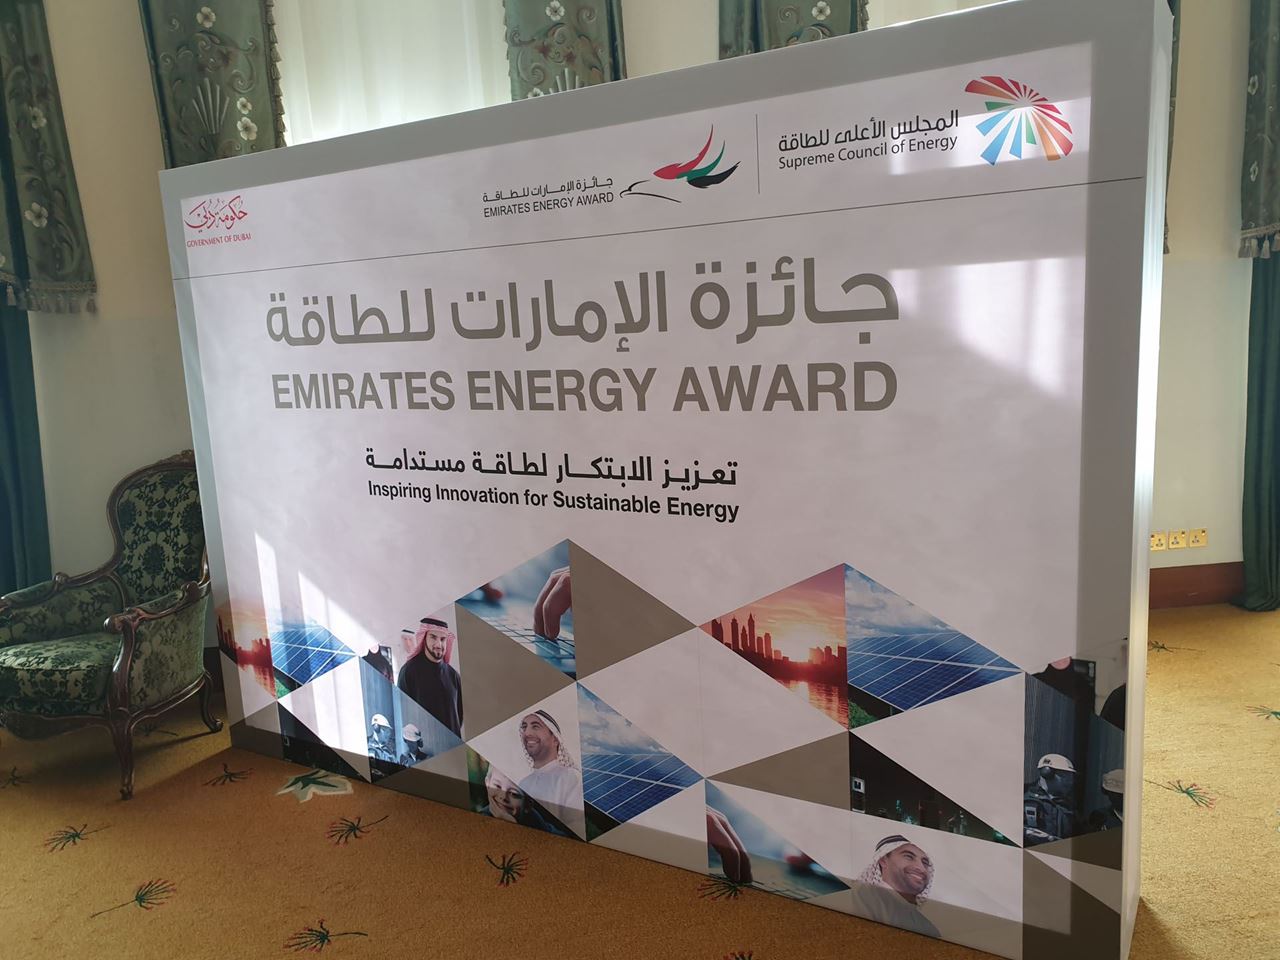 المجلس الأعلى للطاقة بدبي ينظّم جولة ترويجية لجائزة الامارات للطاقة 2020 في الكويت